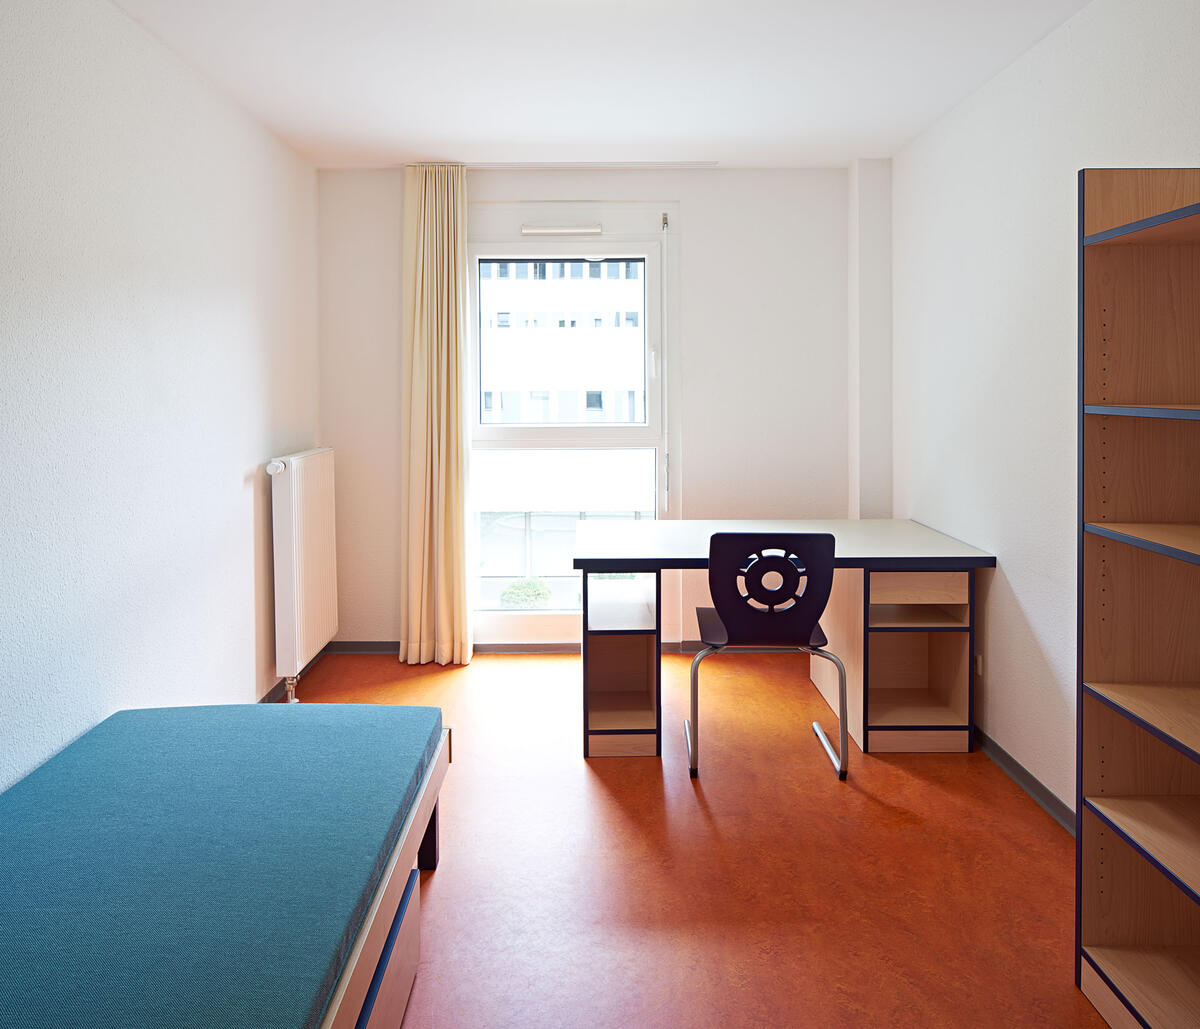 Zimmer mit Bett, Schreibtisch und Regal im Wohnheim in der Fabrikstraße